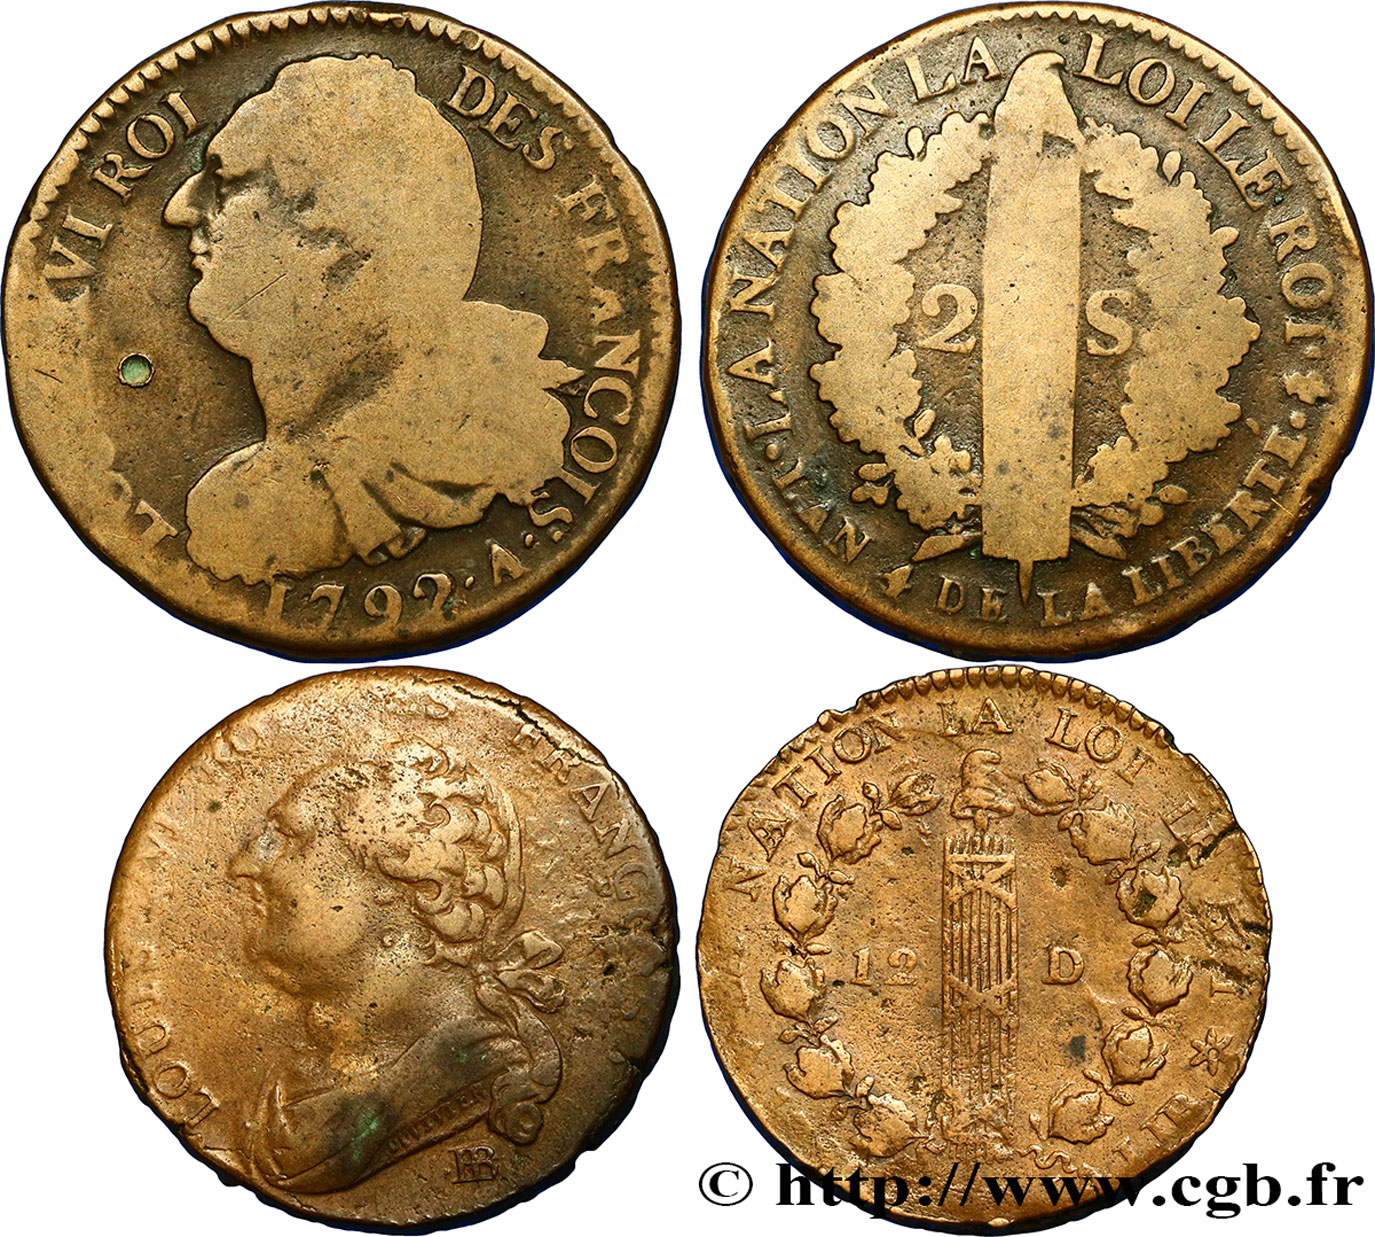 LOTES Lot de deux monnaies de la Révolution française n.d. s.l. BC